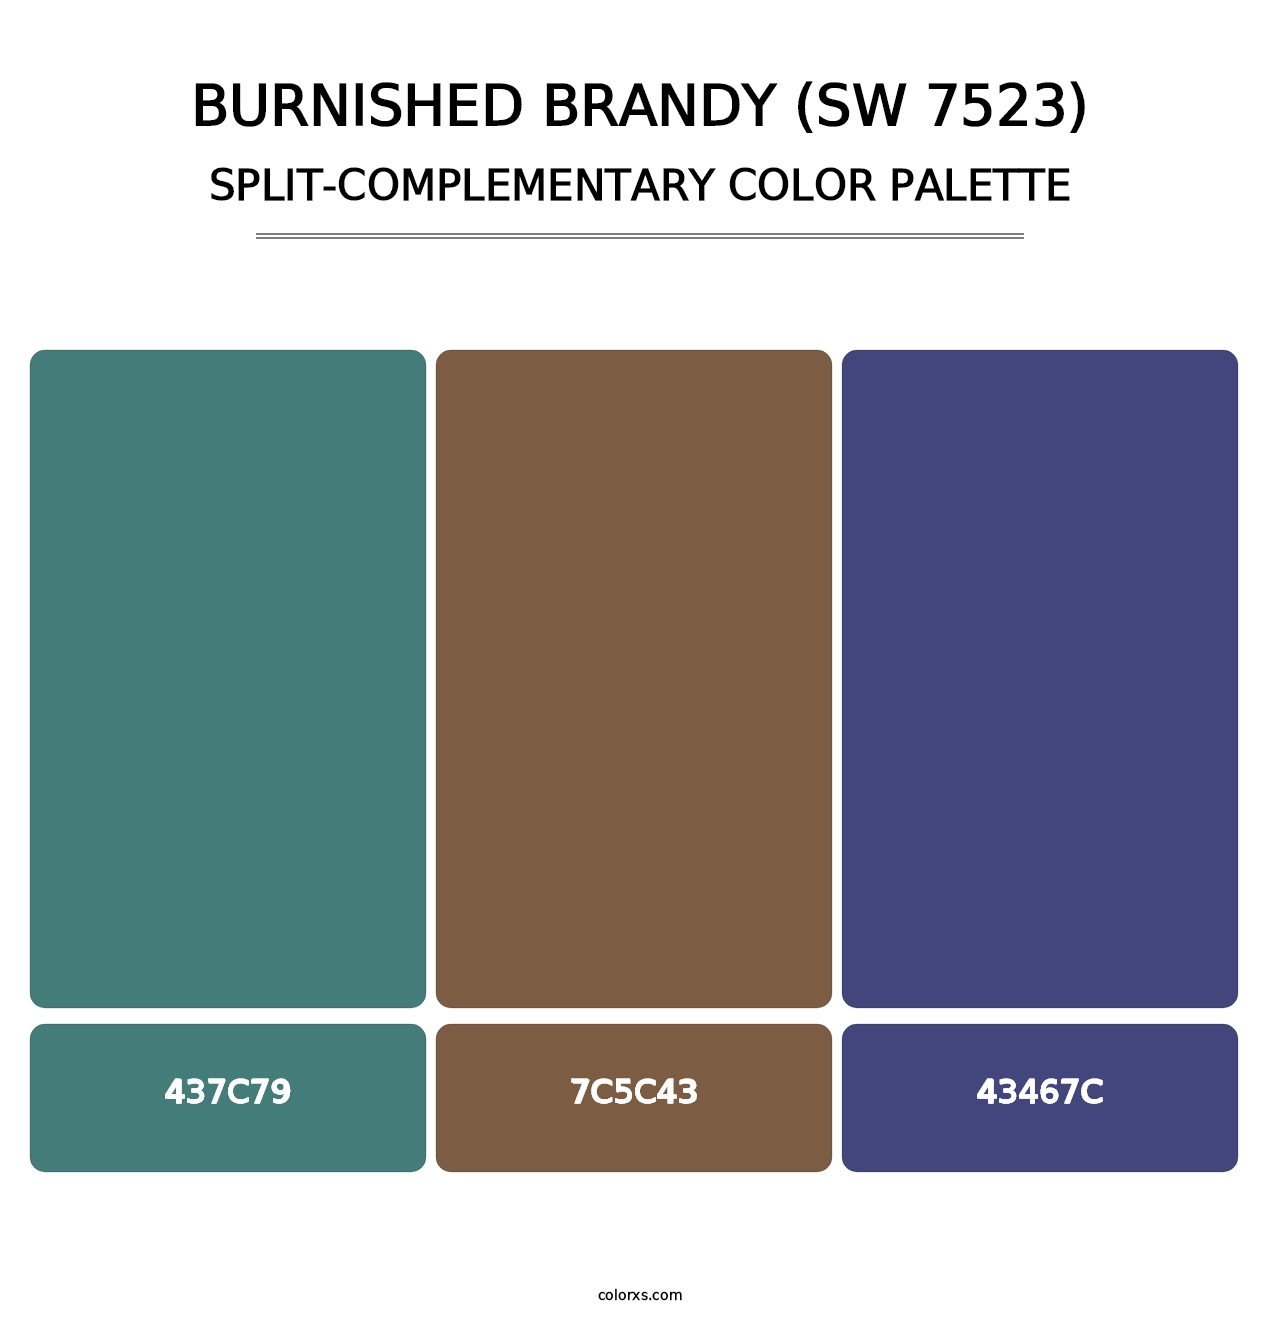 Burnished Brandy (SW 7523) - Split-Complementary Color Palette